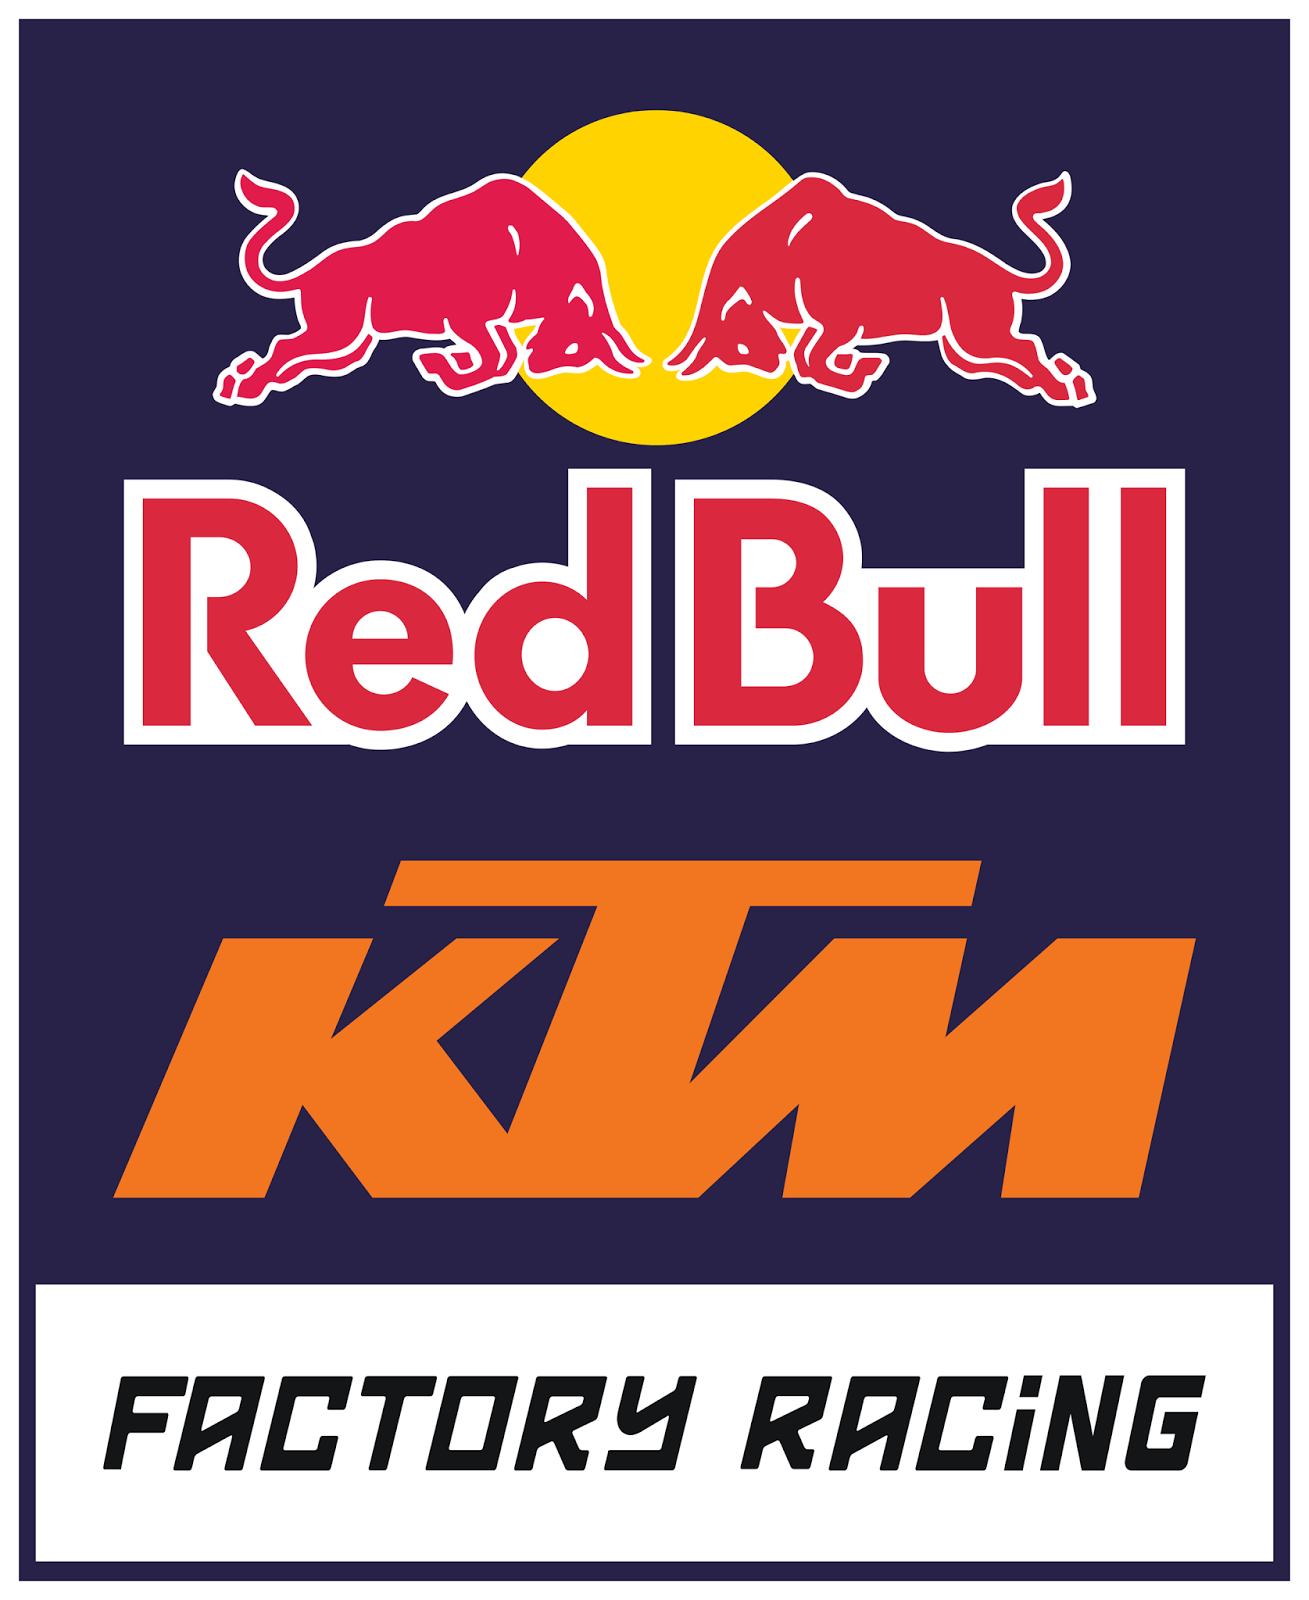 Red Bull KTM Logo - Pin on Motor cross